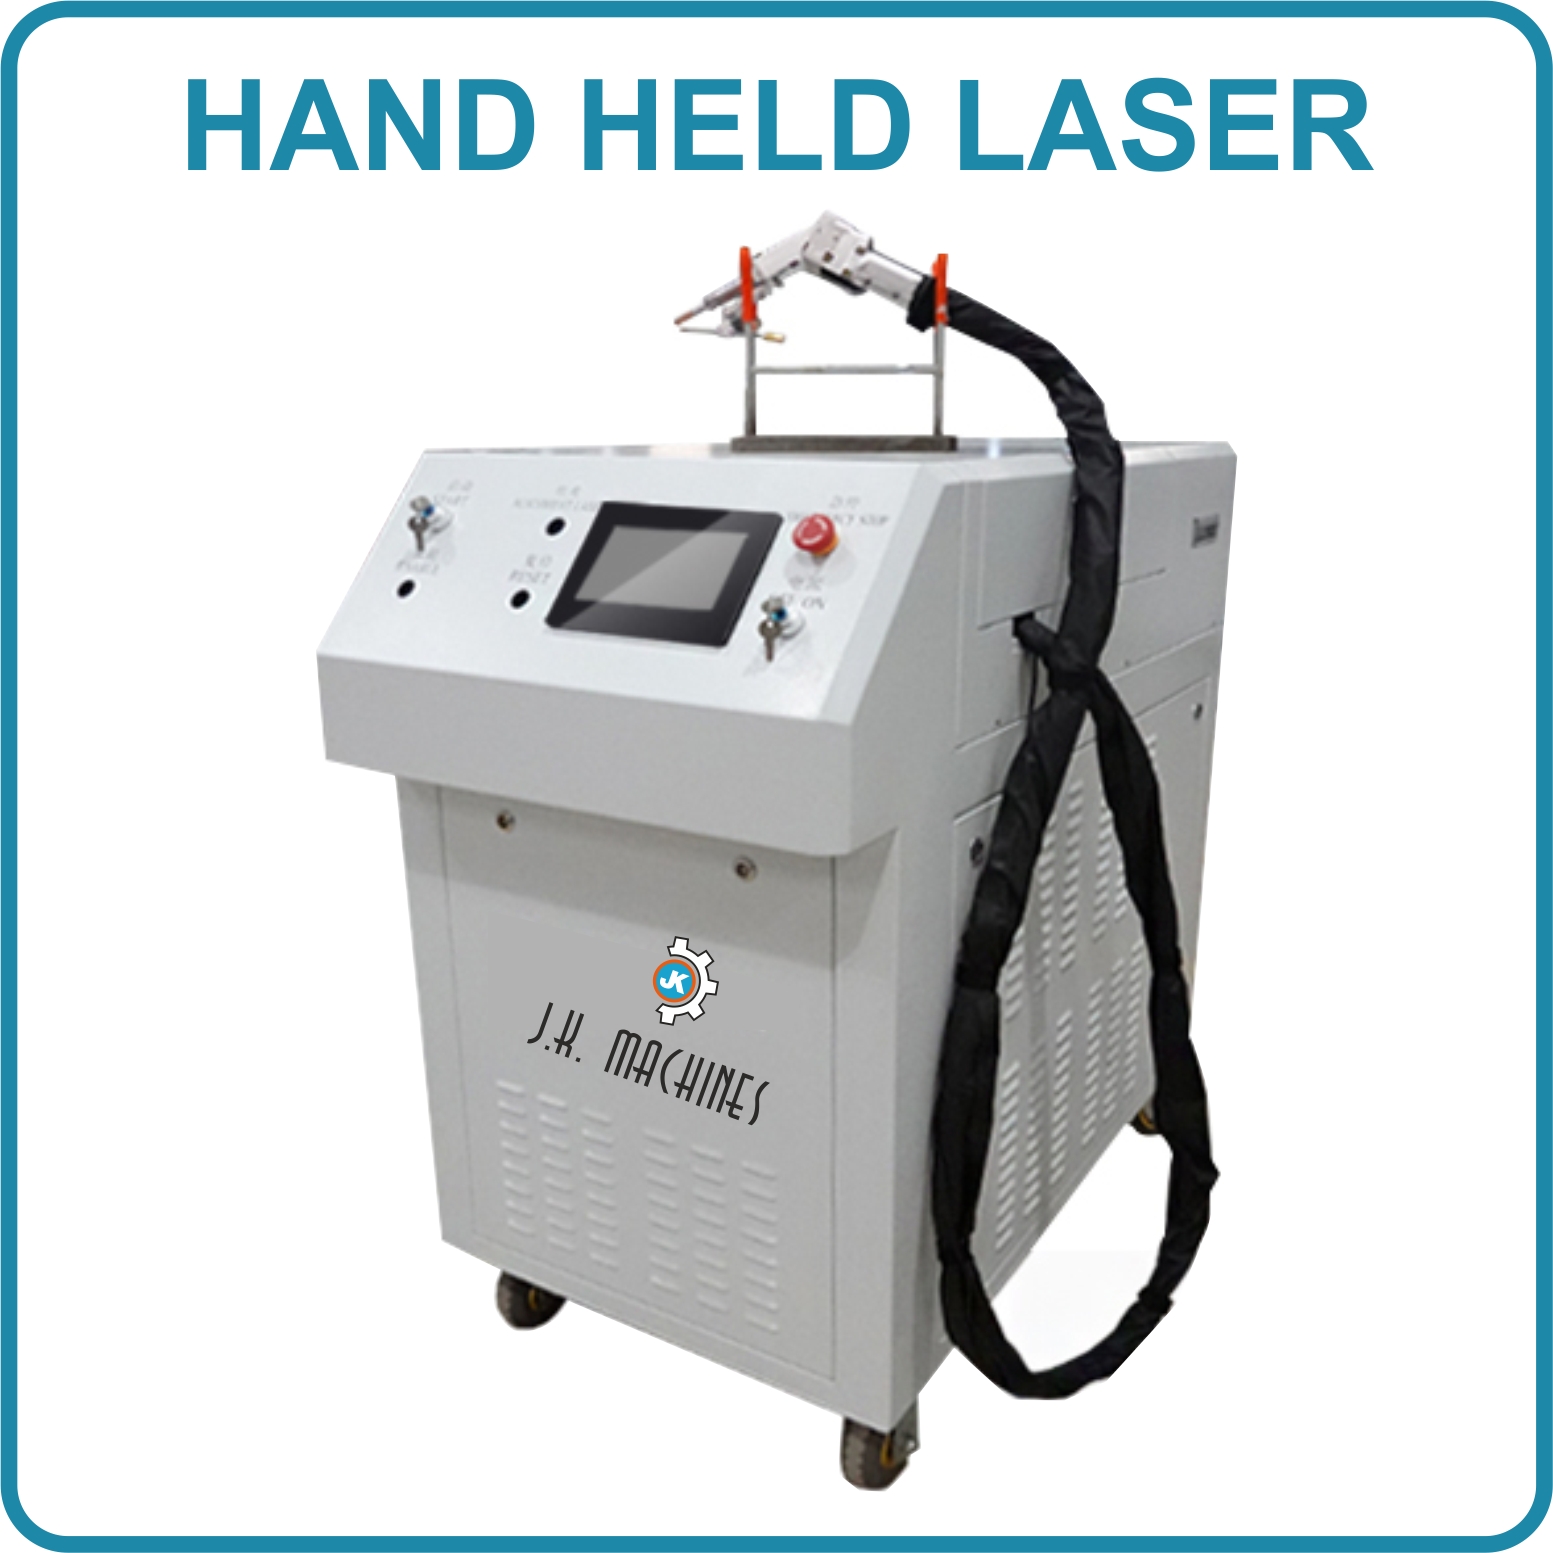 Hand held Laser Welding